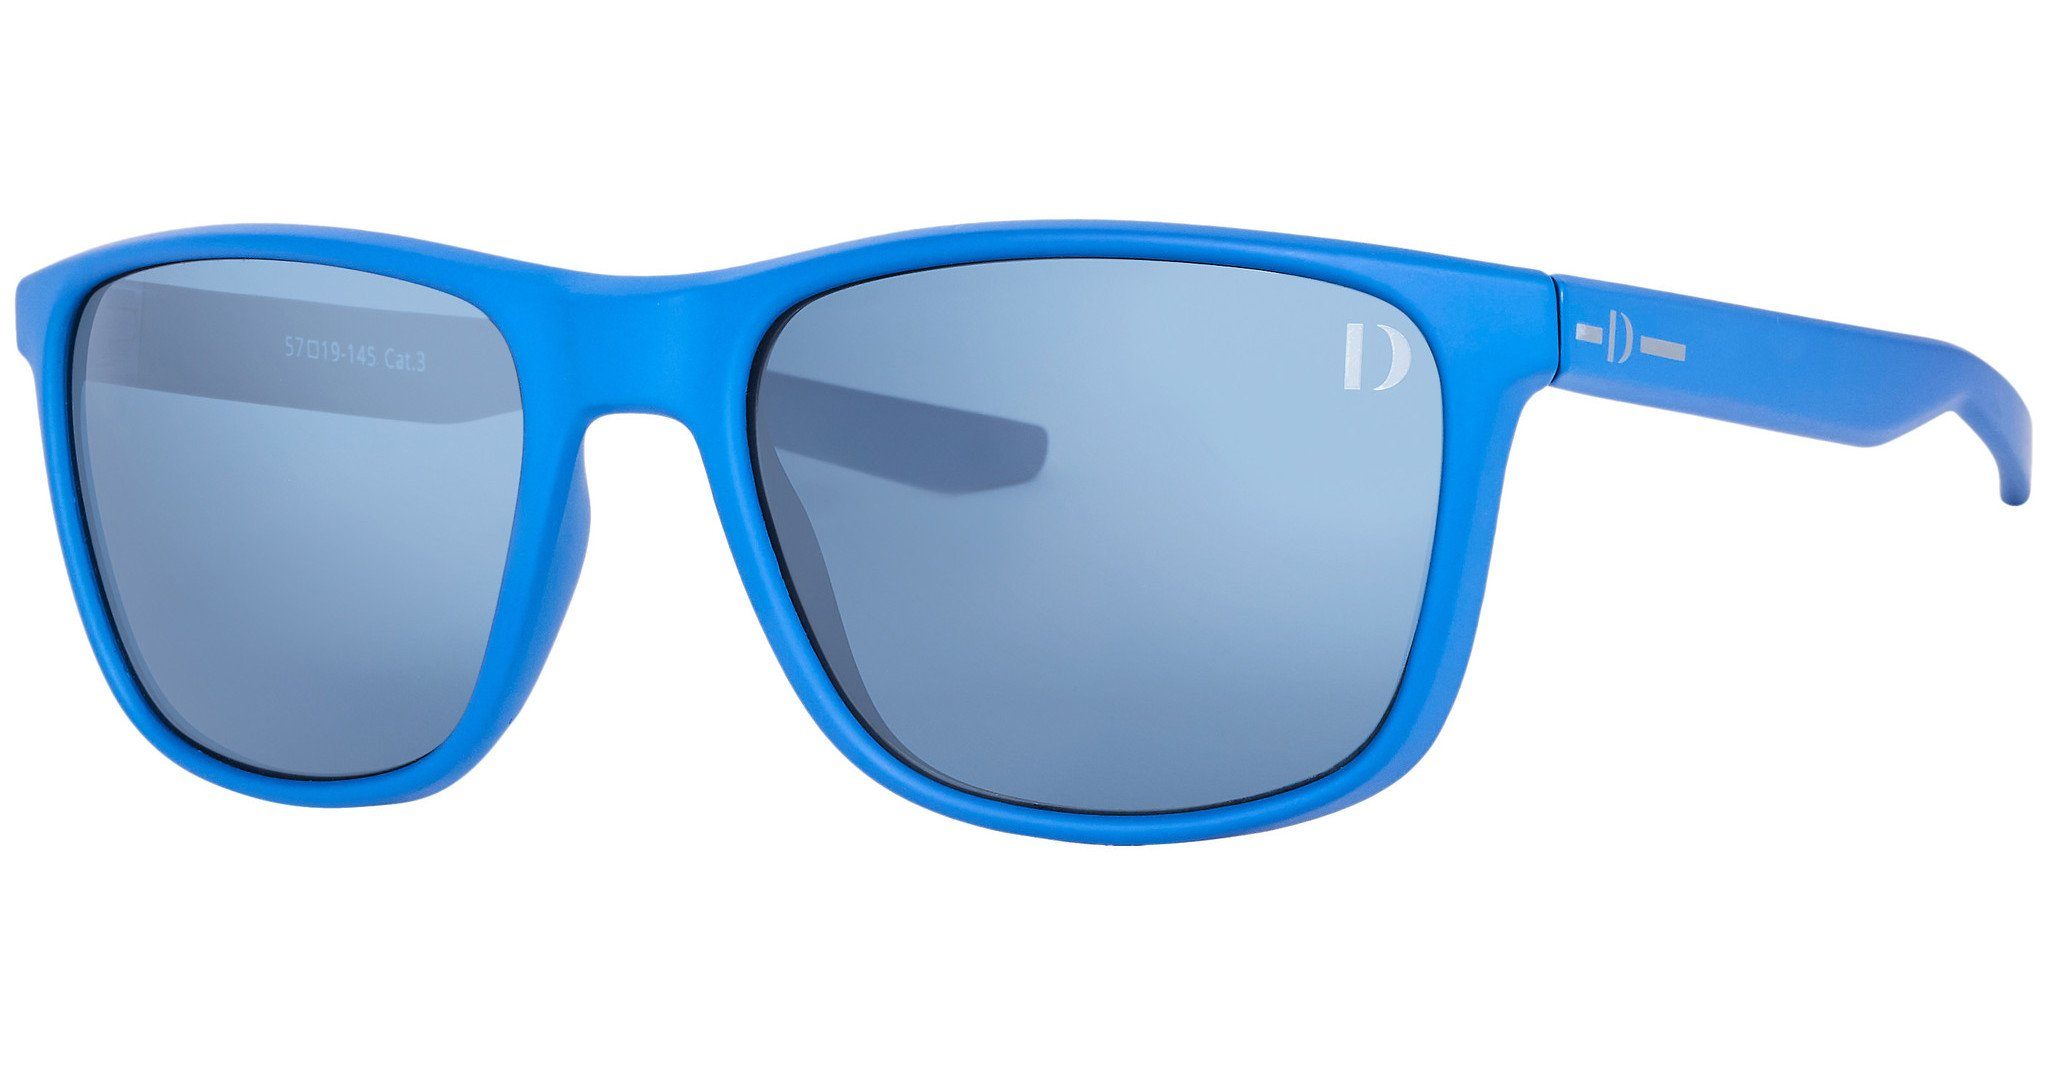 Dieter Bohlen Sonnenbrille EDITION 4 blau